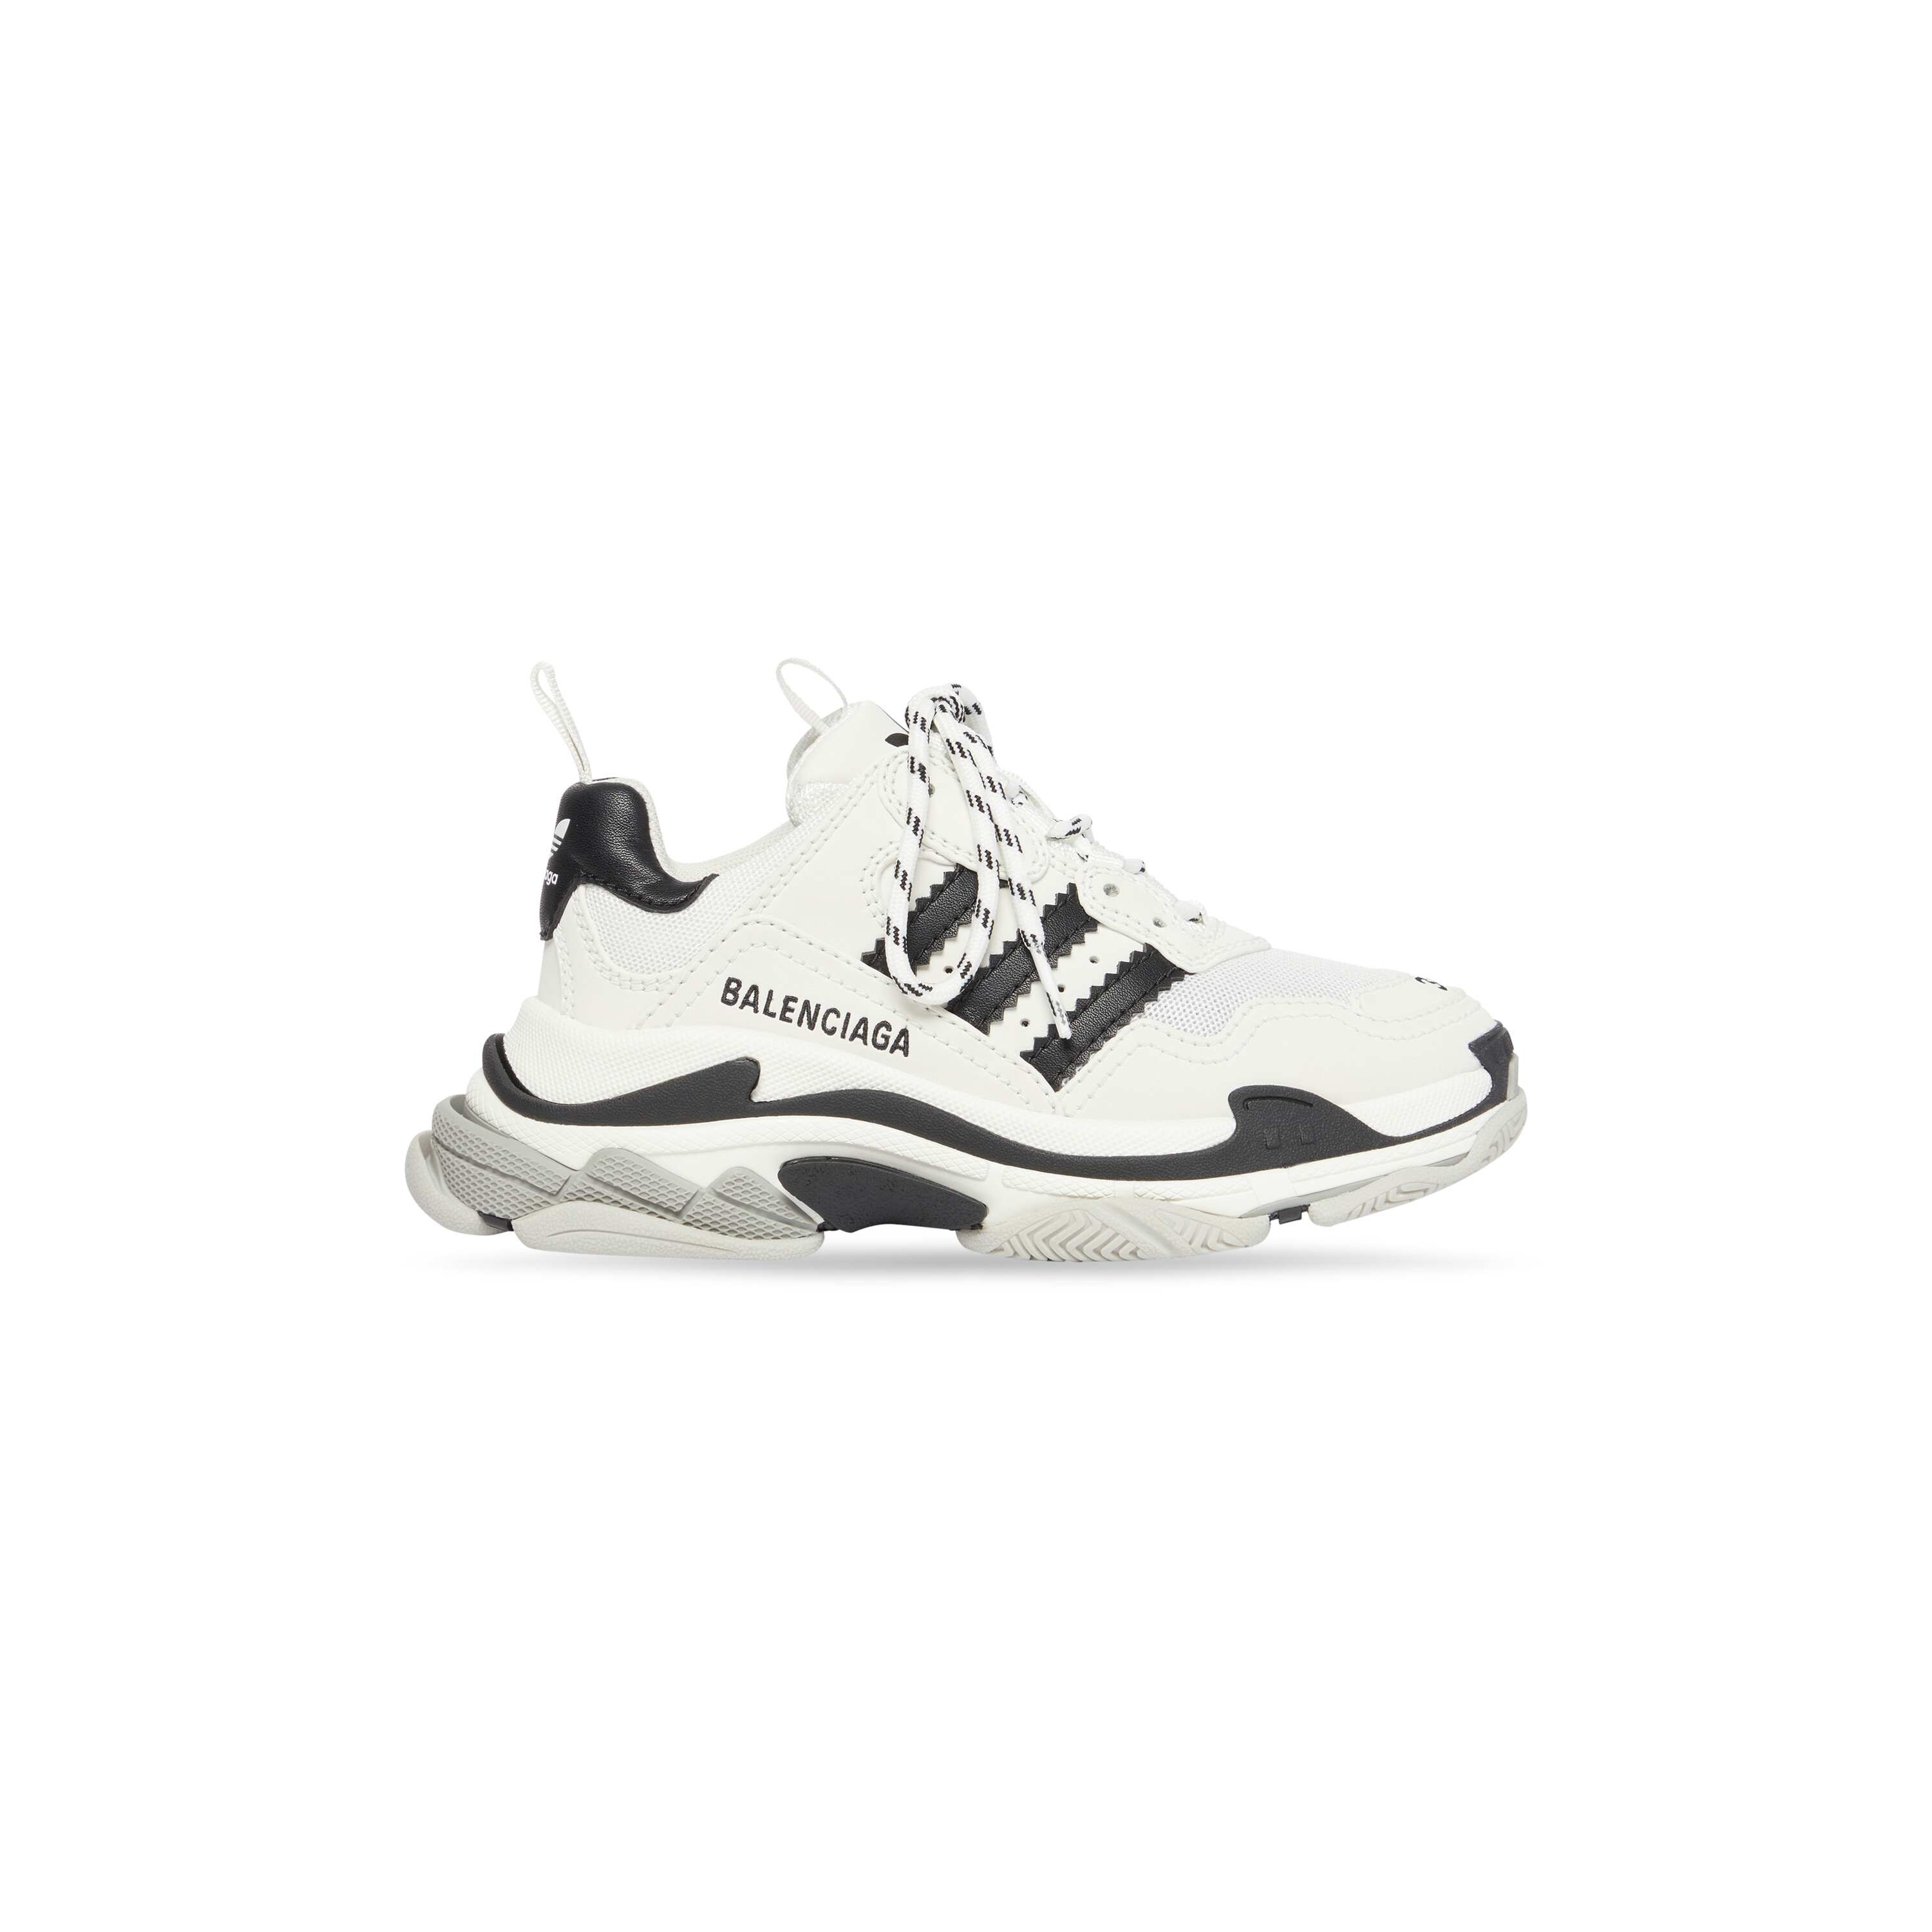 Men's Balenciaga / Adidas S Sneaker in White | Balenciaga US